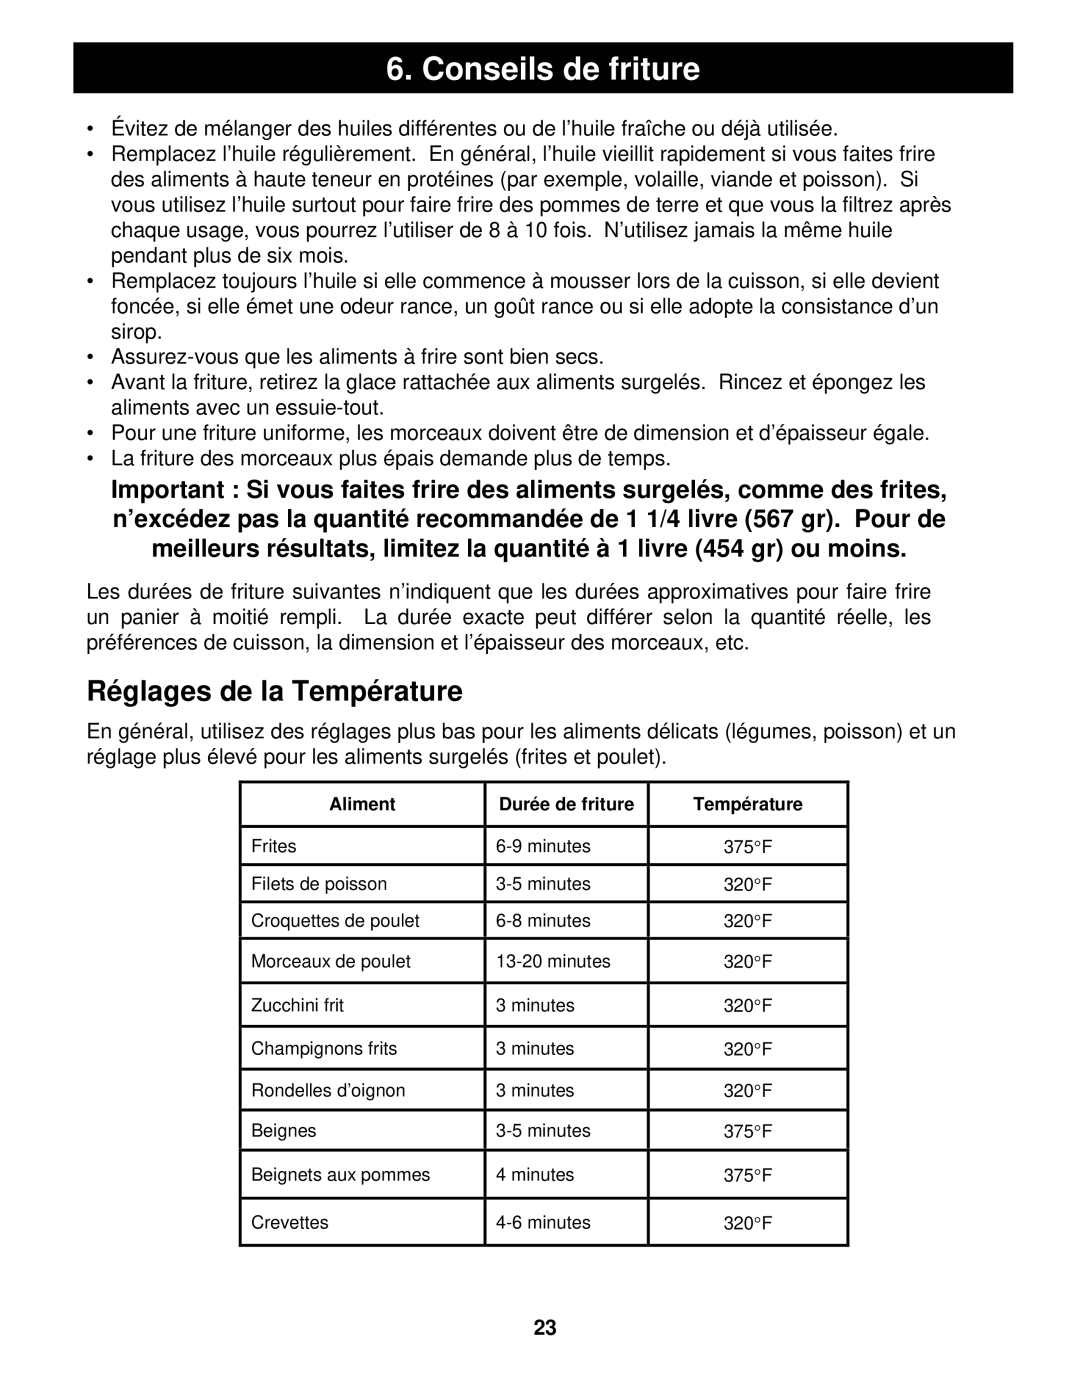 Euro-Pro BF160 manual Conseils de friture, Réglages de la Température 